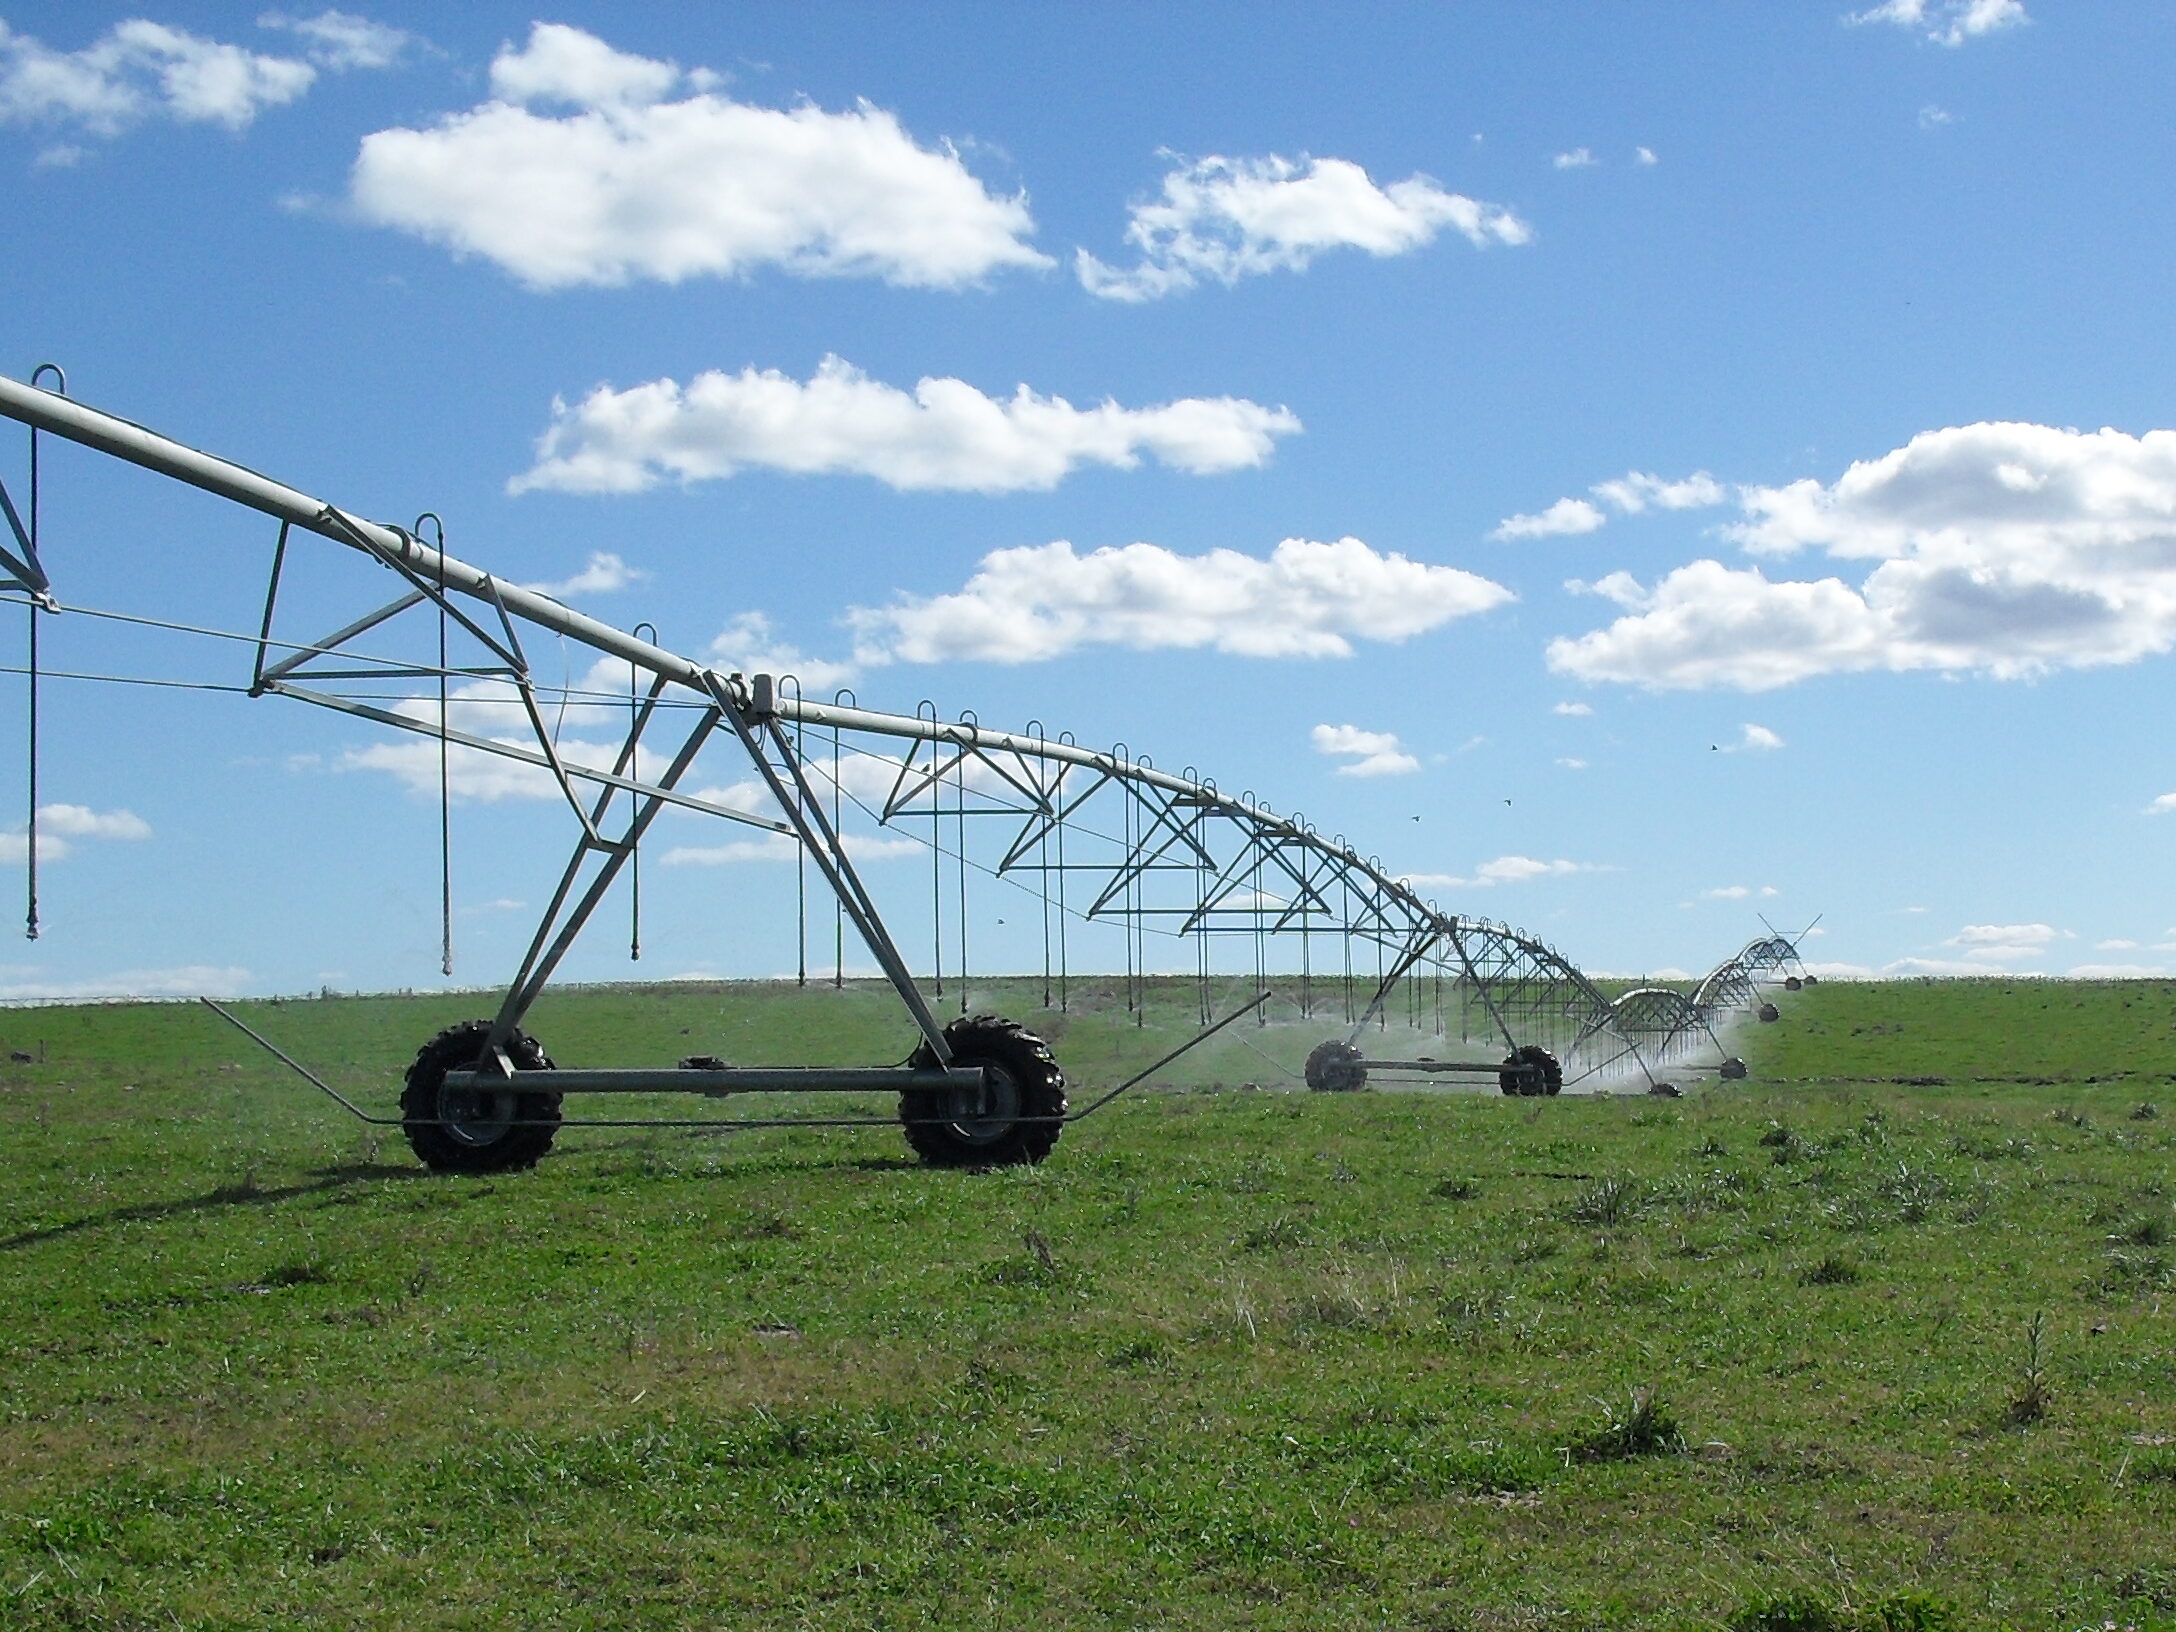 imagen de maquina de riego el el campo, descuento comercial al riego productivo 